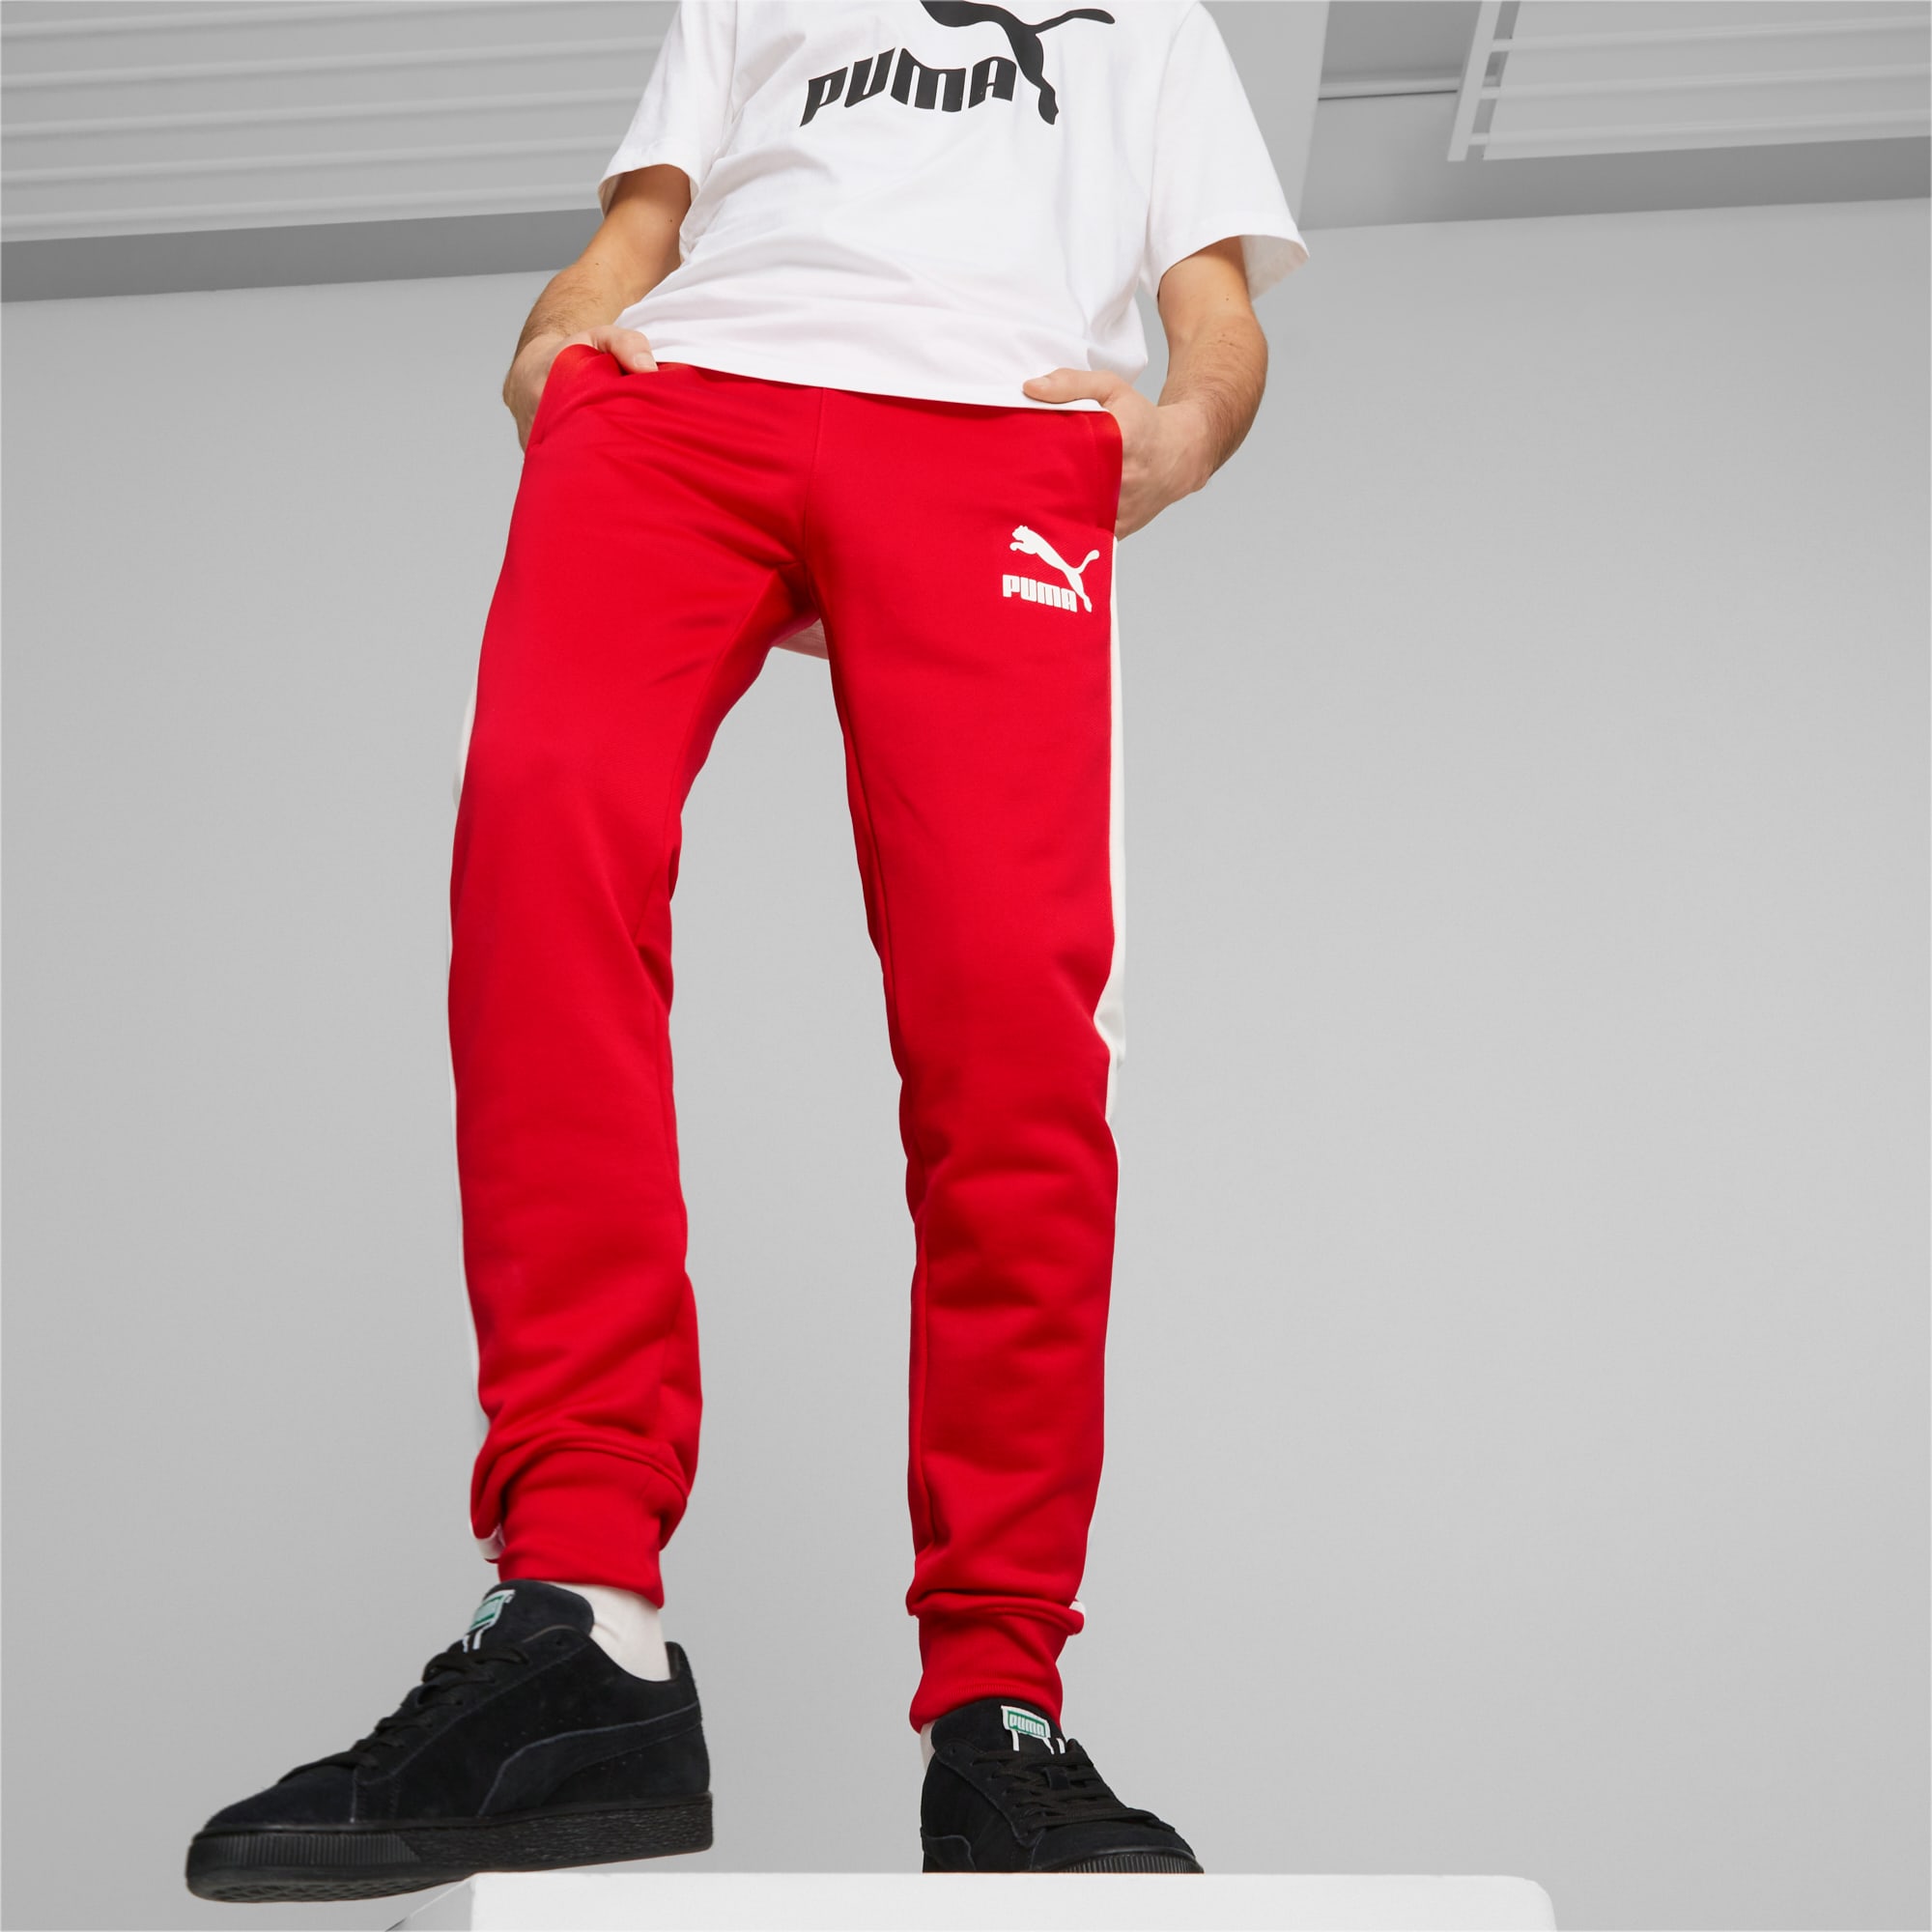 PUMA Iconic T7 Herren Trainingshose, Rot, Größe: XL, Kleidung